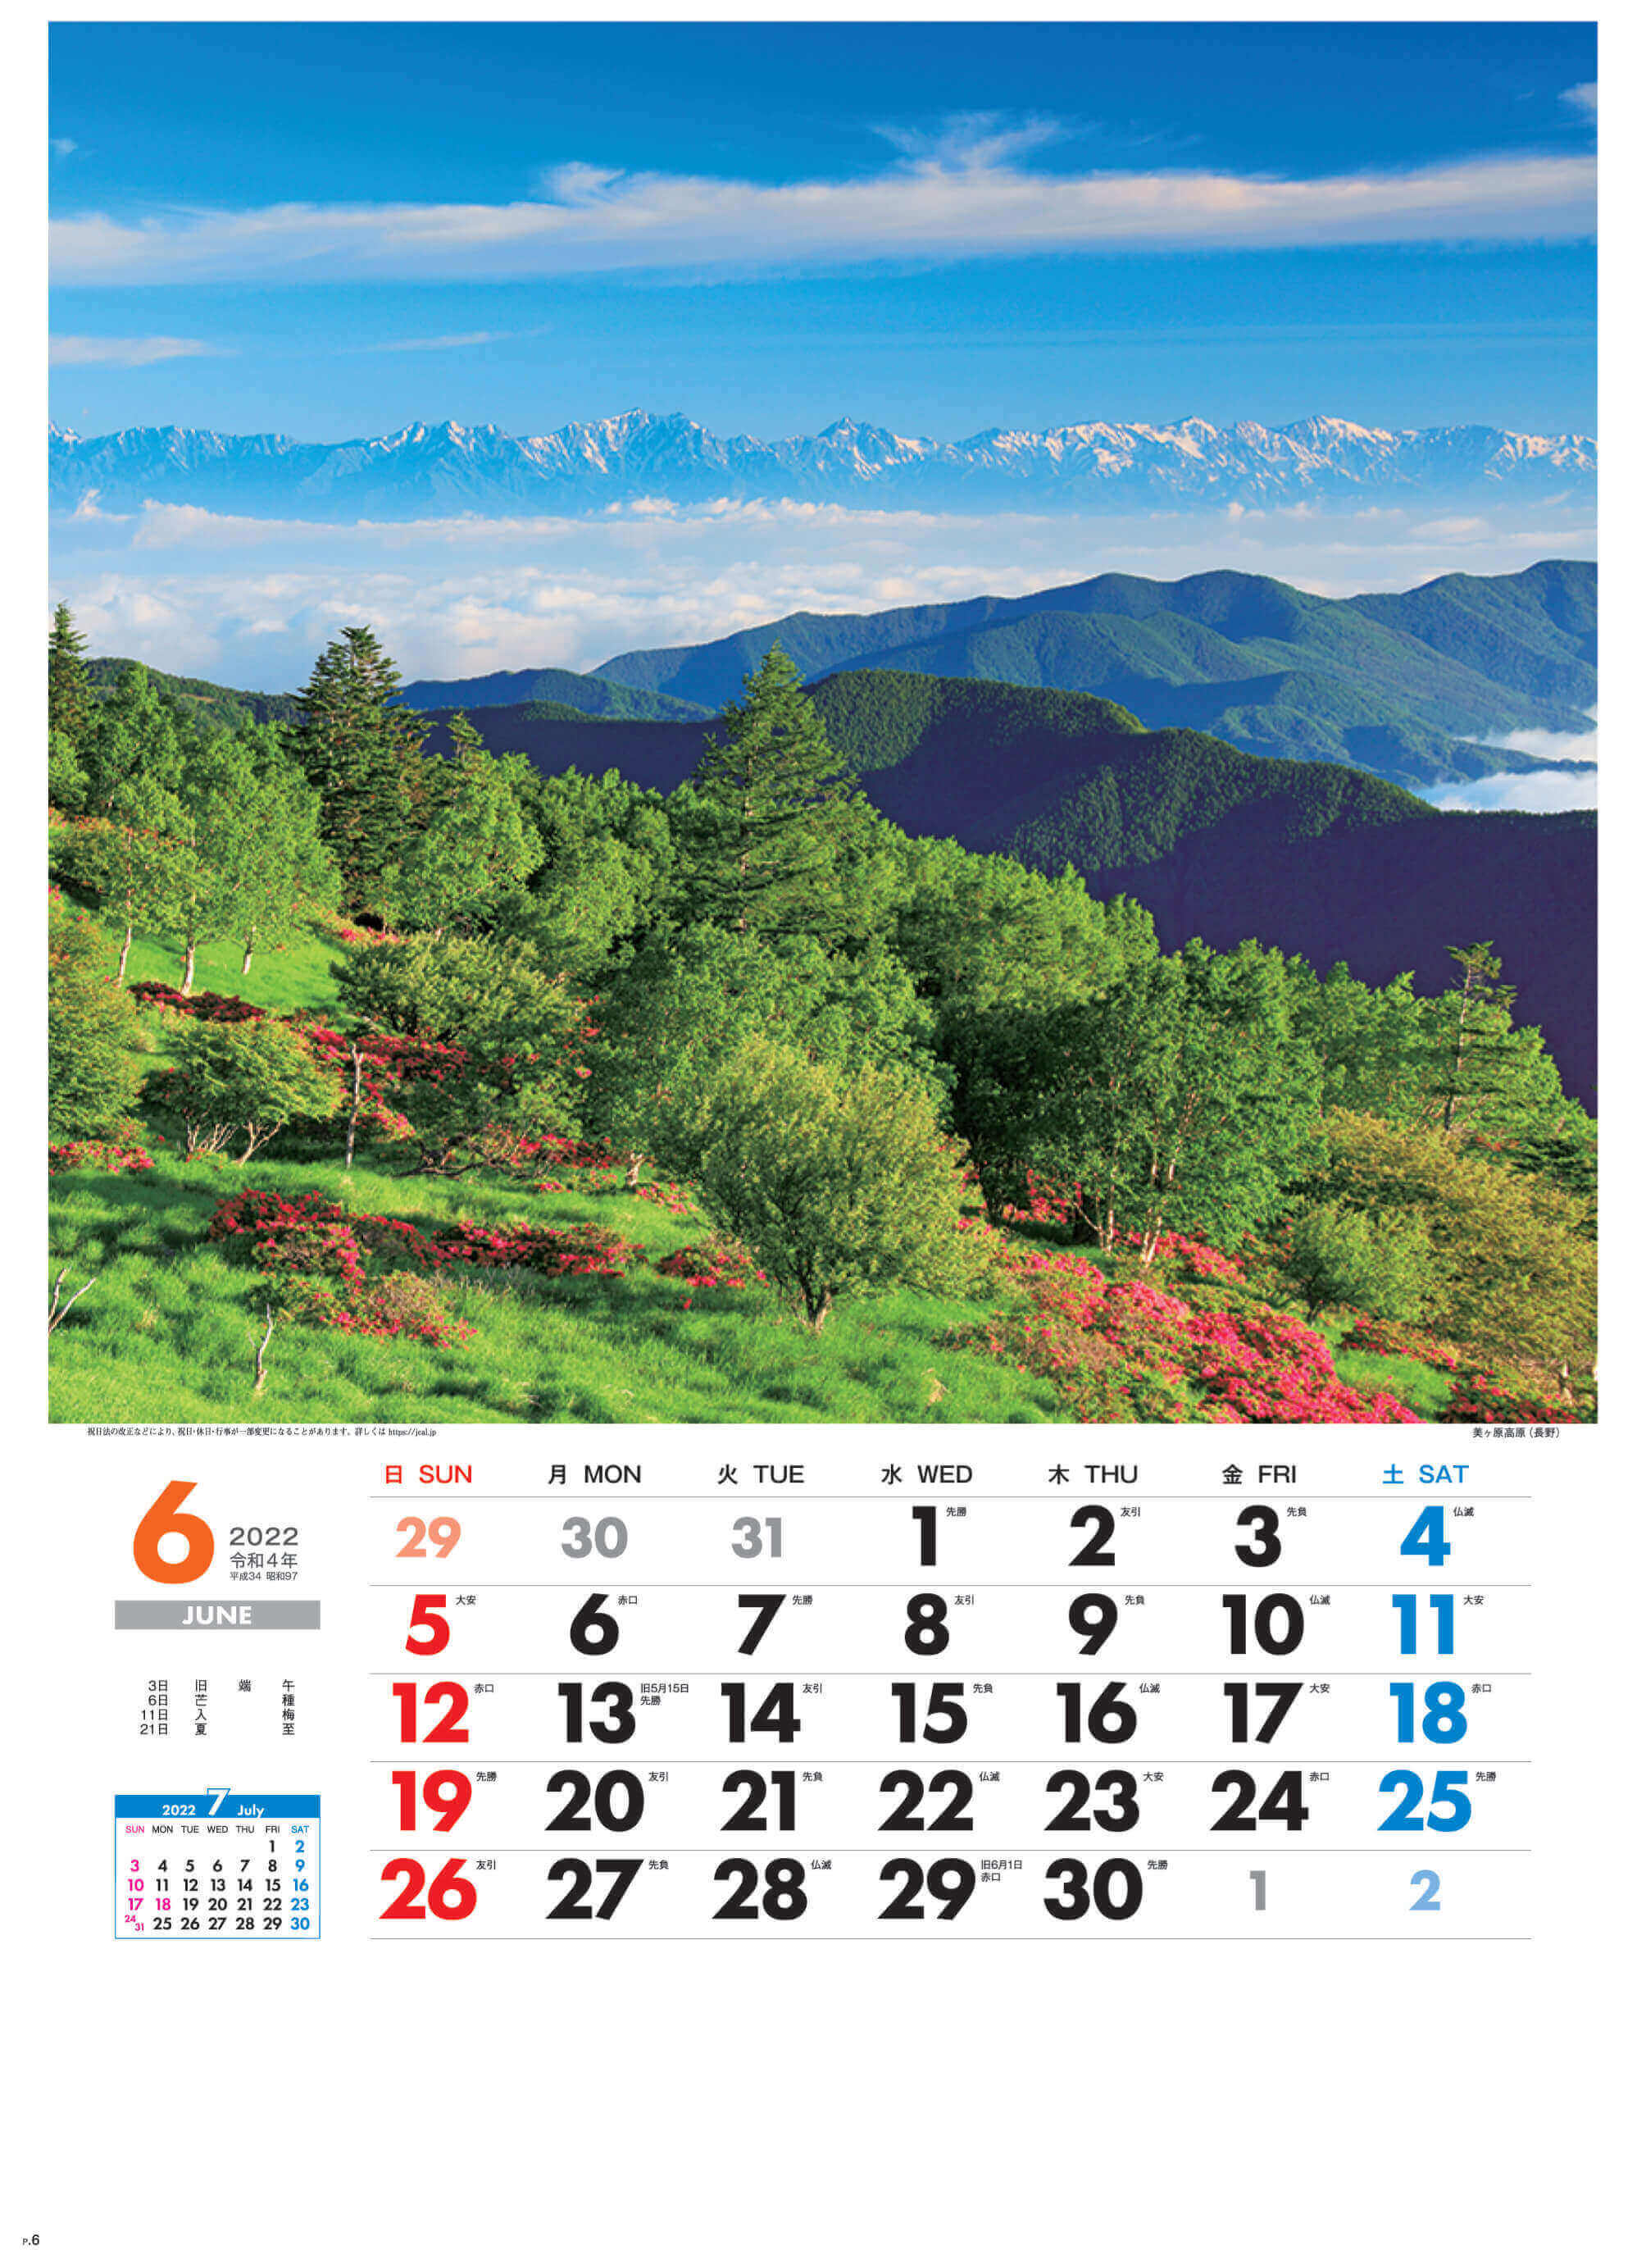 6月 美ヶ原高原(長野) 美しき日本 2022年カレンダーの画像